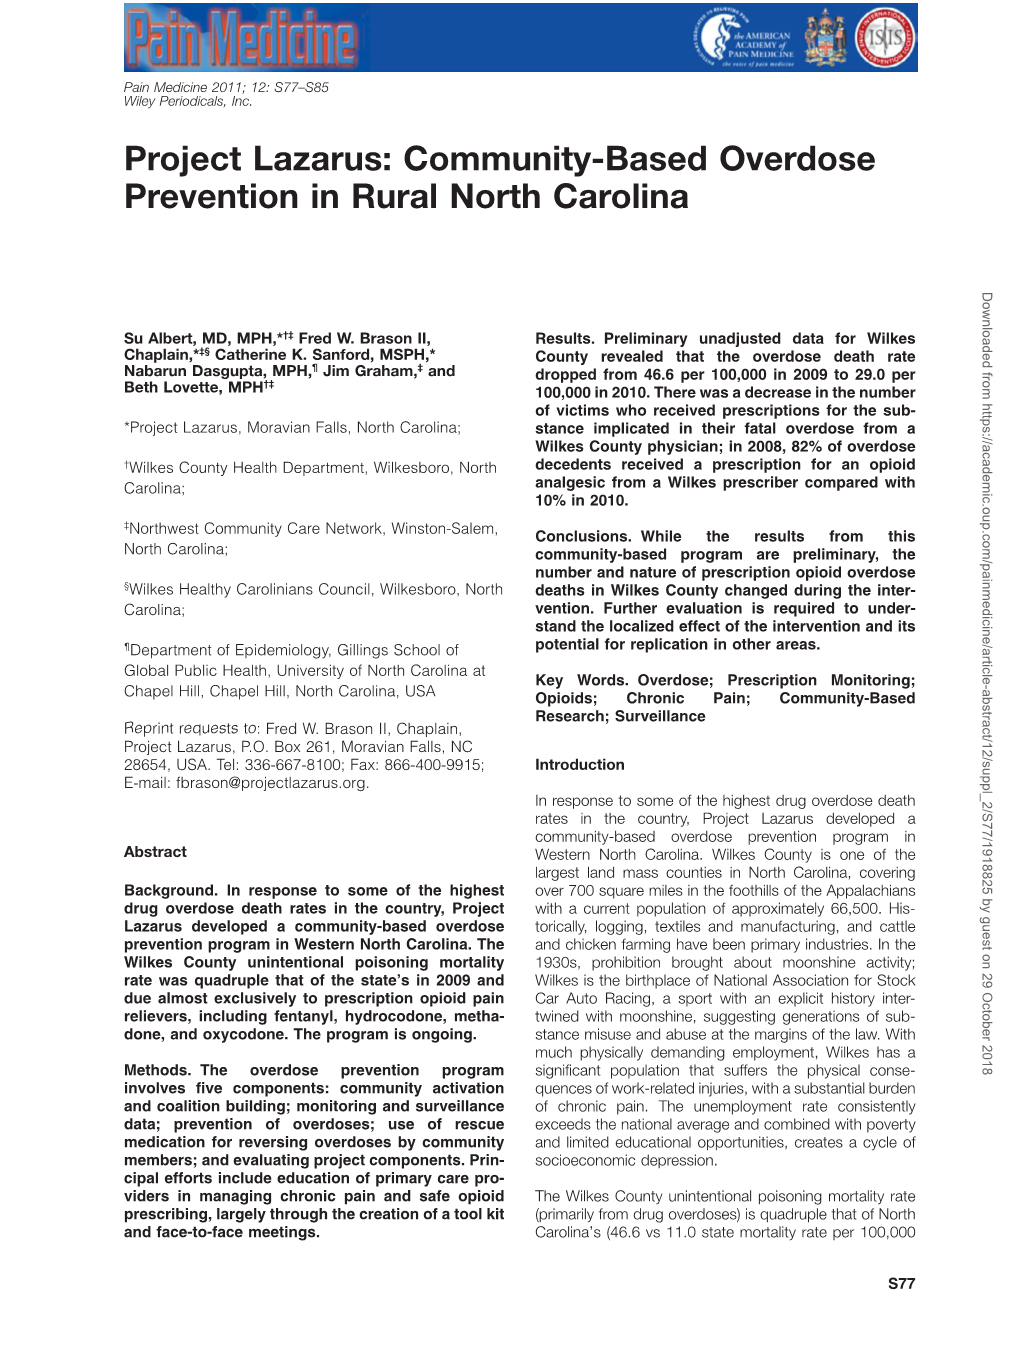 Project Lazarus: Communitybased Overdose Prevention in Rural North Carolina